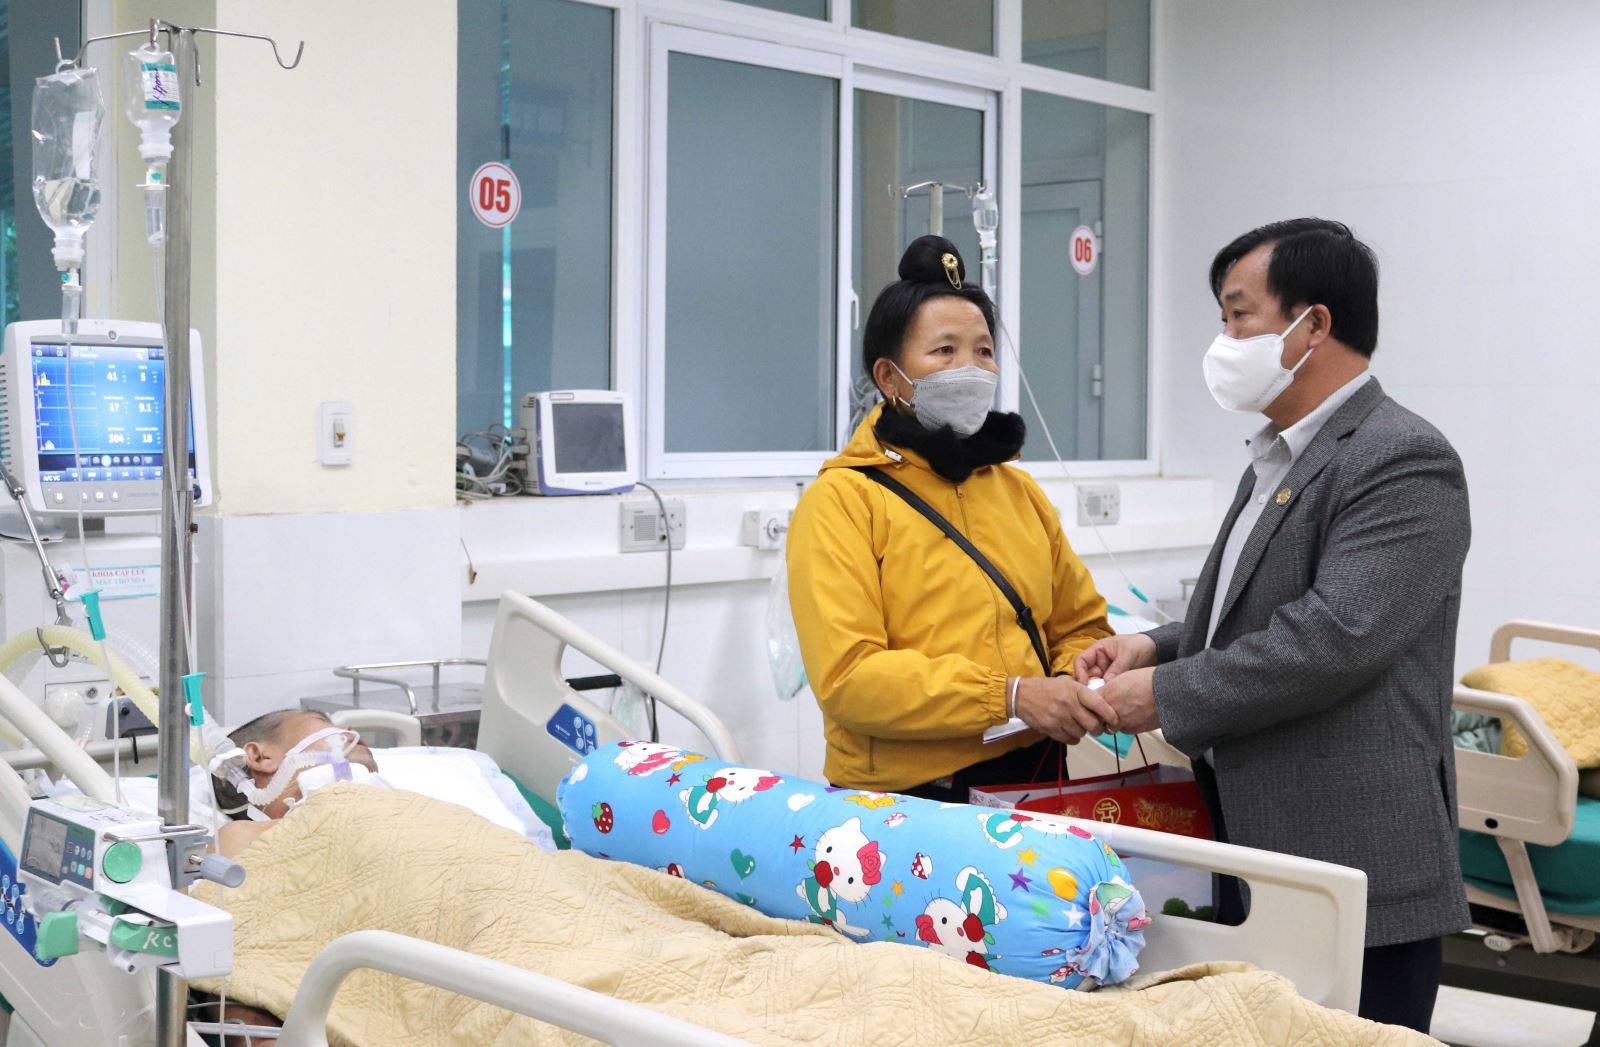 Đồng chí Vừ A Bằng, Phó Chủ tịch UBND tỉnh tặng quà chúc tết các bệnh nhân và động viên người nhà bệnh nhân tại Khoa Cấp cứu, Bệnh viện Đa khoa tỉnh